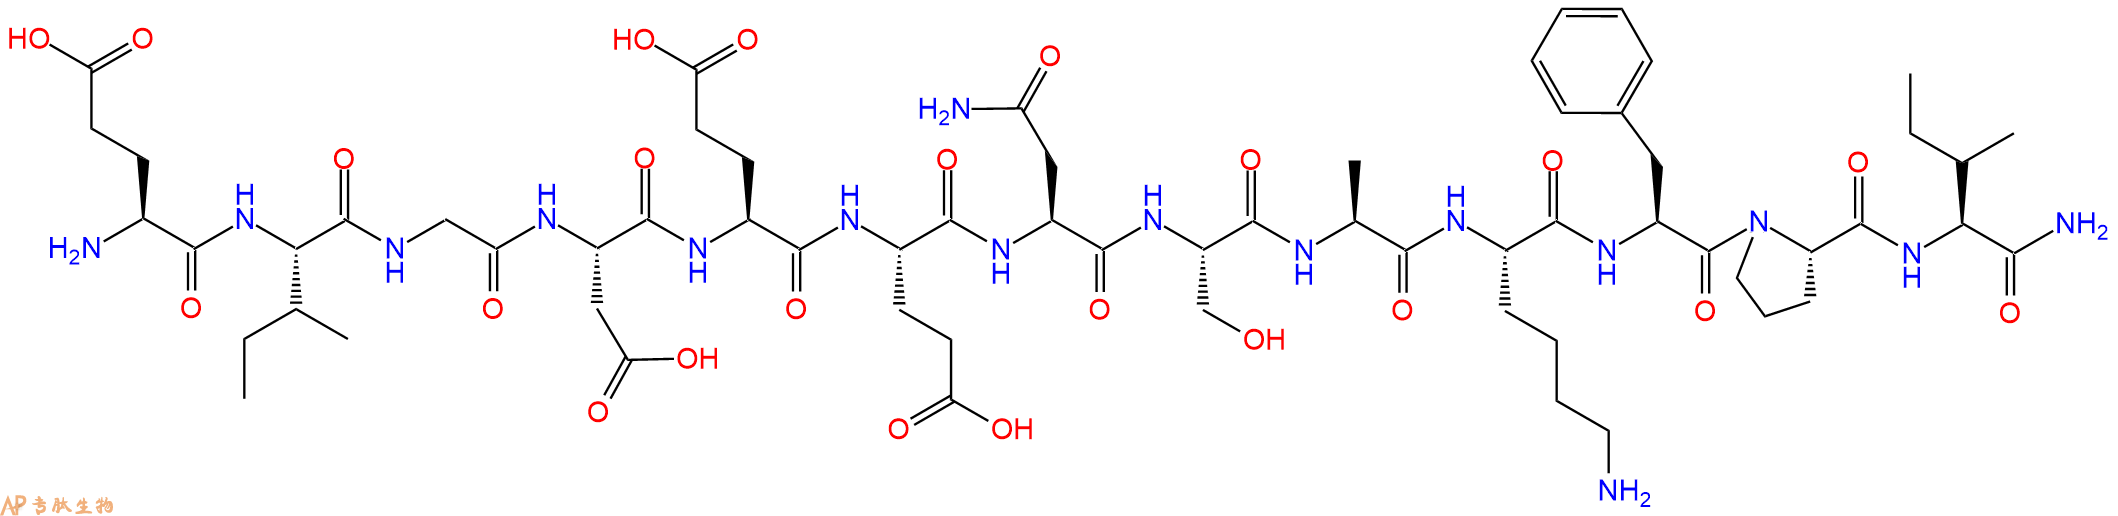 专肽生物产品Neuropeptide EI (human, mouse, rat) trifluoroacetate salt125934-45-4